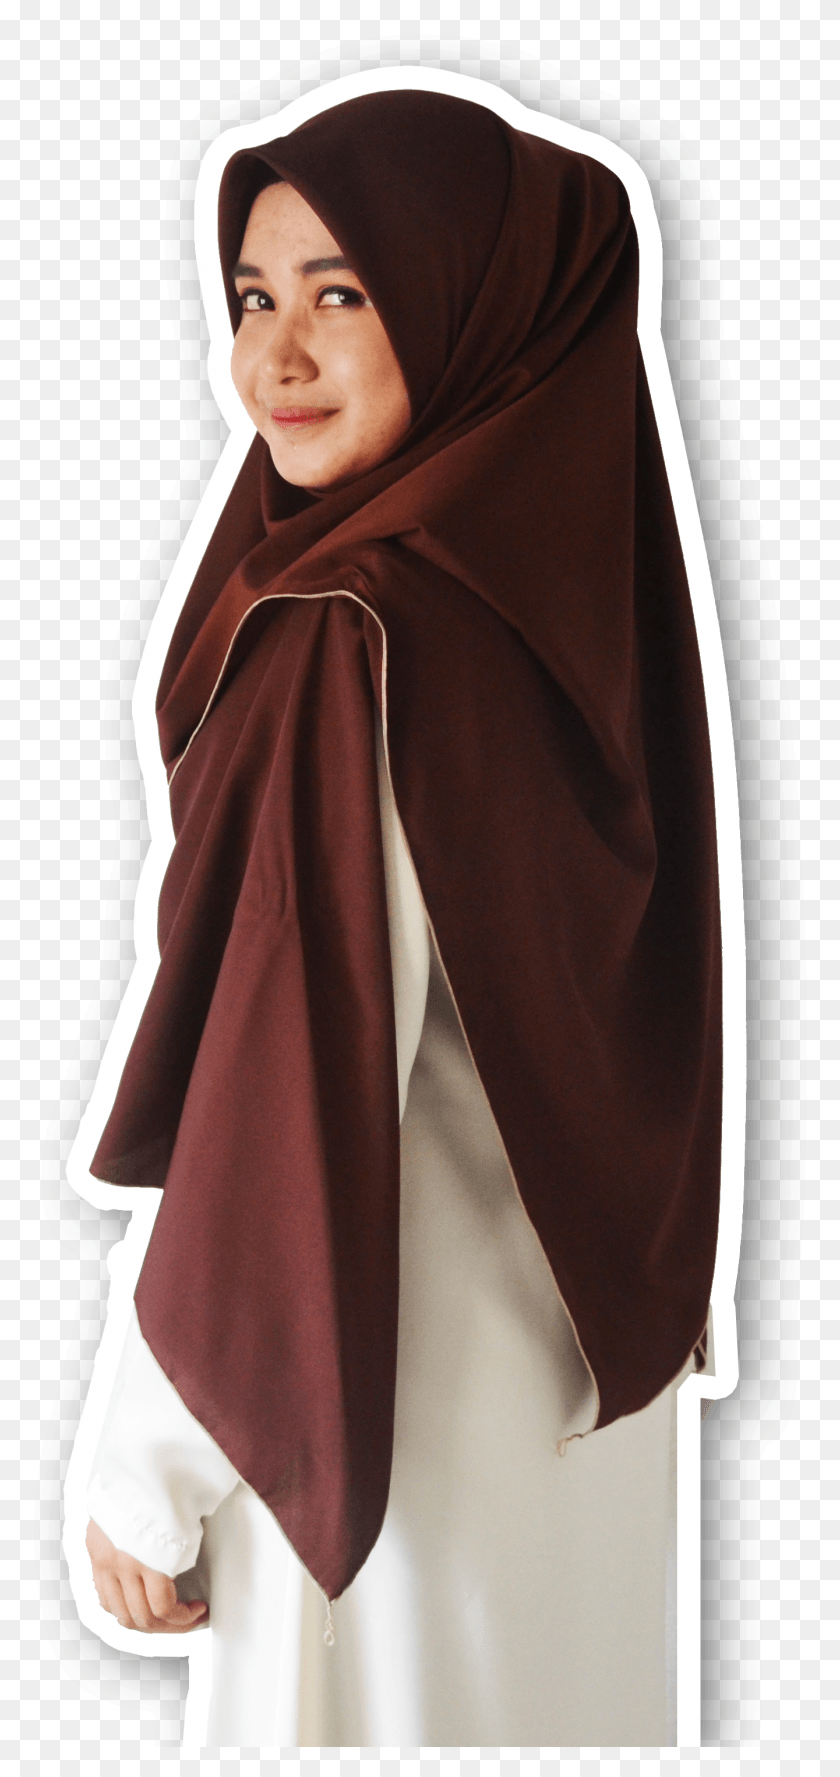 1339x2948 Yuk Jadi Muslimah Surprised Muslim Woman, Clothing, Apparel, Fashion HD PNG Download